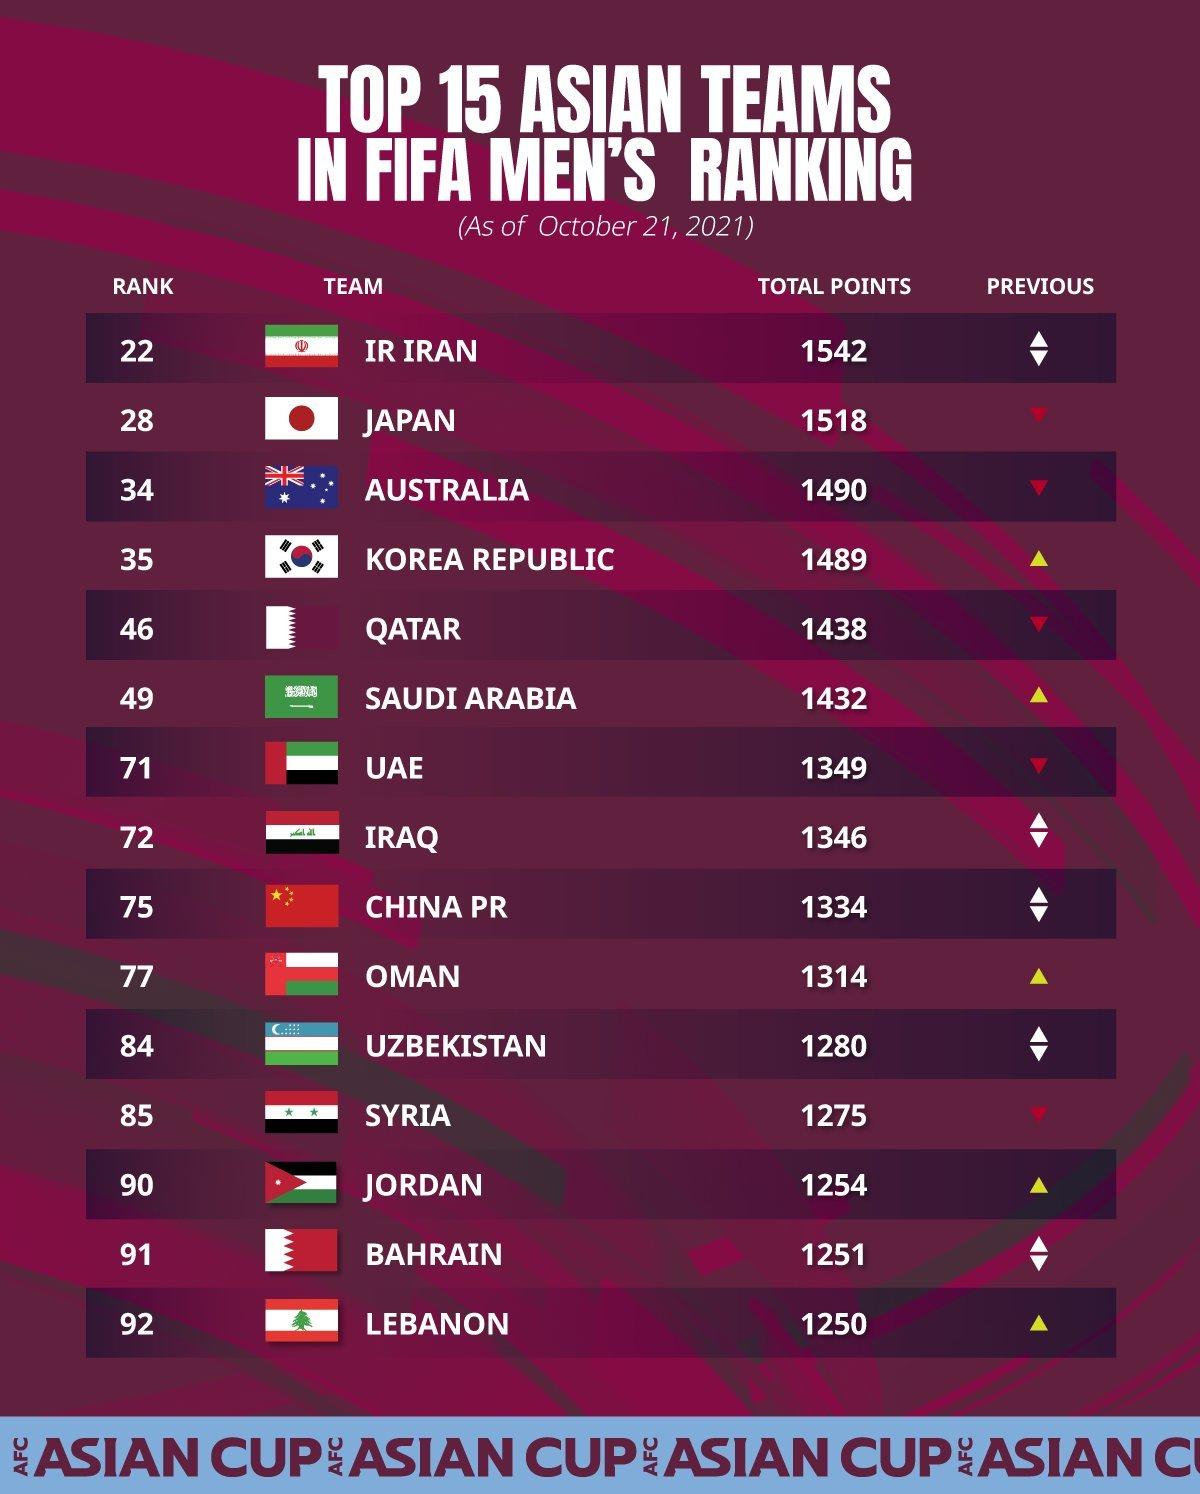 排名比中国队高的还包括澳大利亚队、韩国队、卡塔尔队、沙特阿拉伯队、阿联酋队和伊拉克队